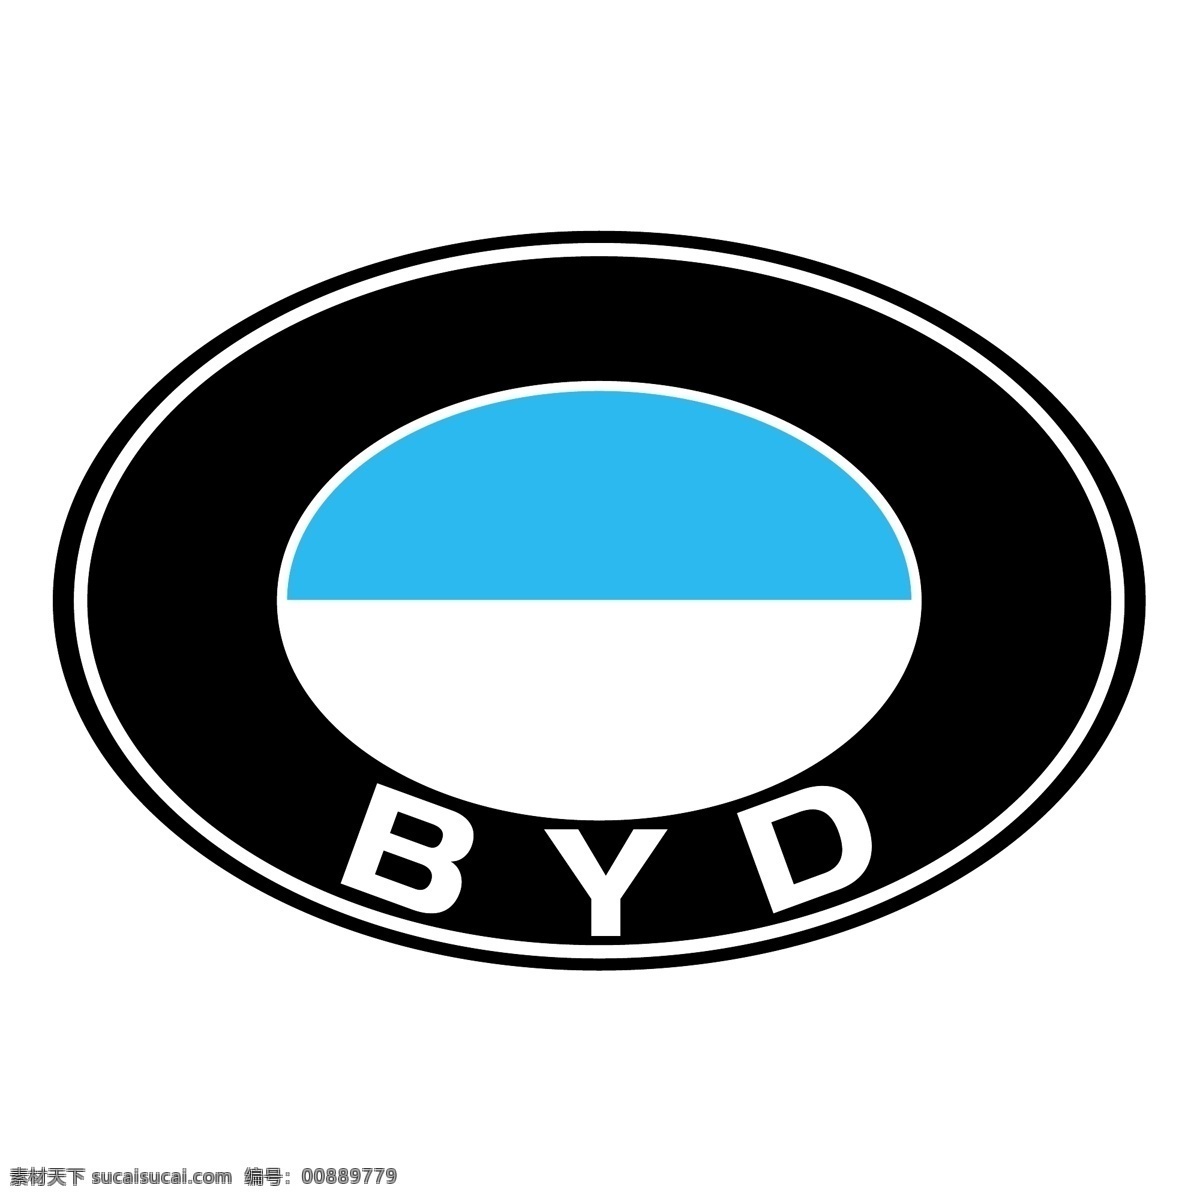 比亚 迪 汽车 标志 标识为免费 psd源文件 logo设计